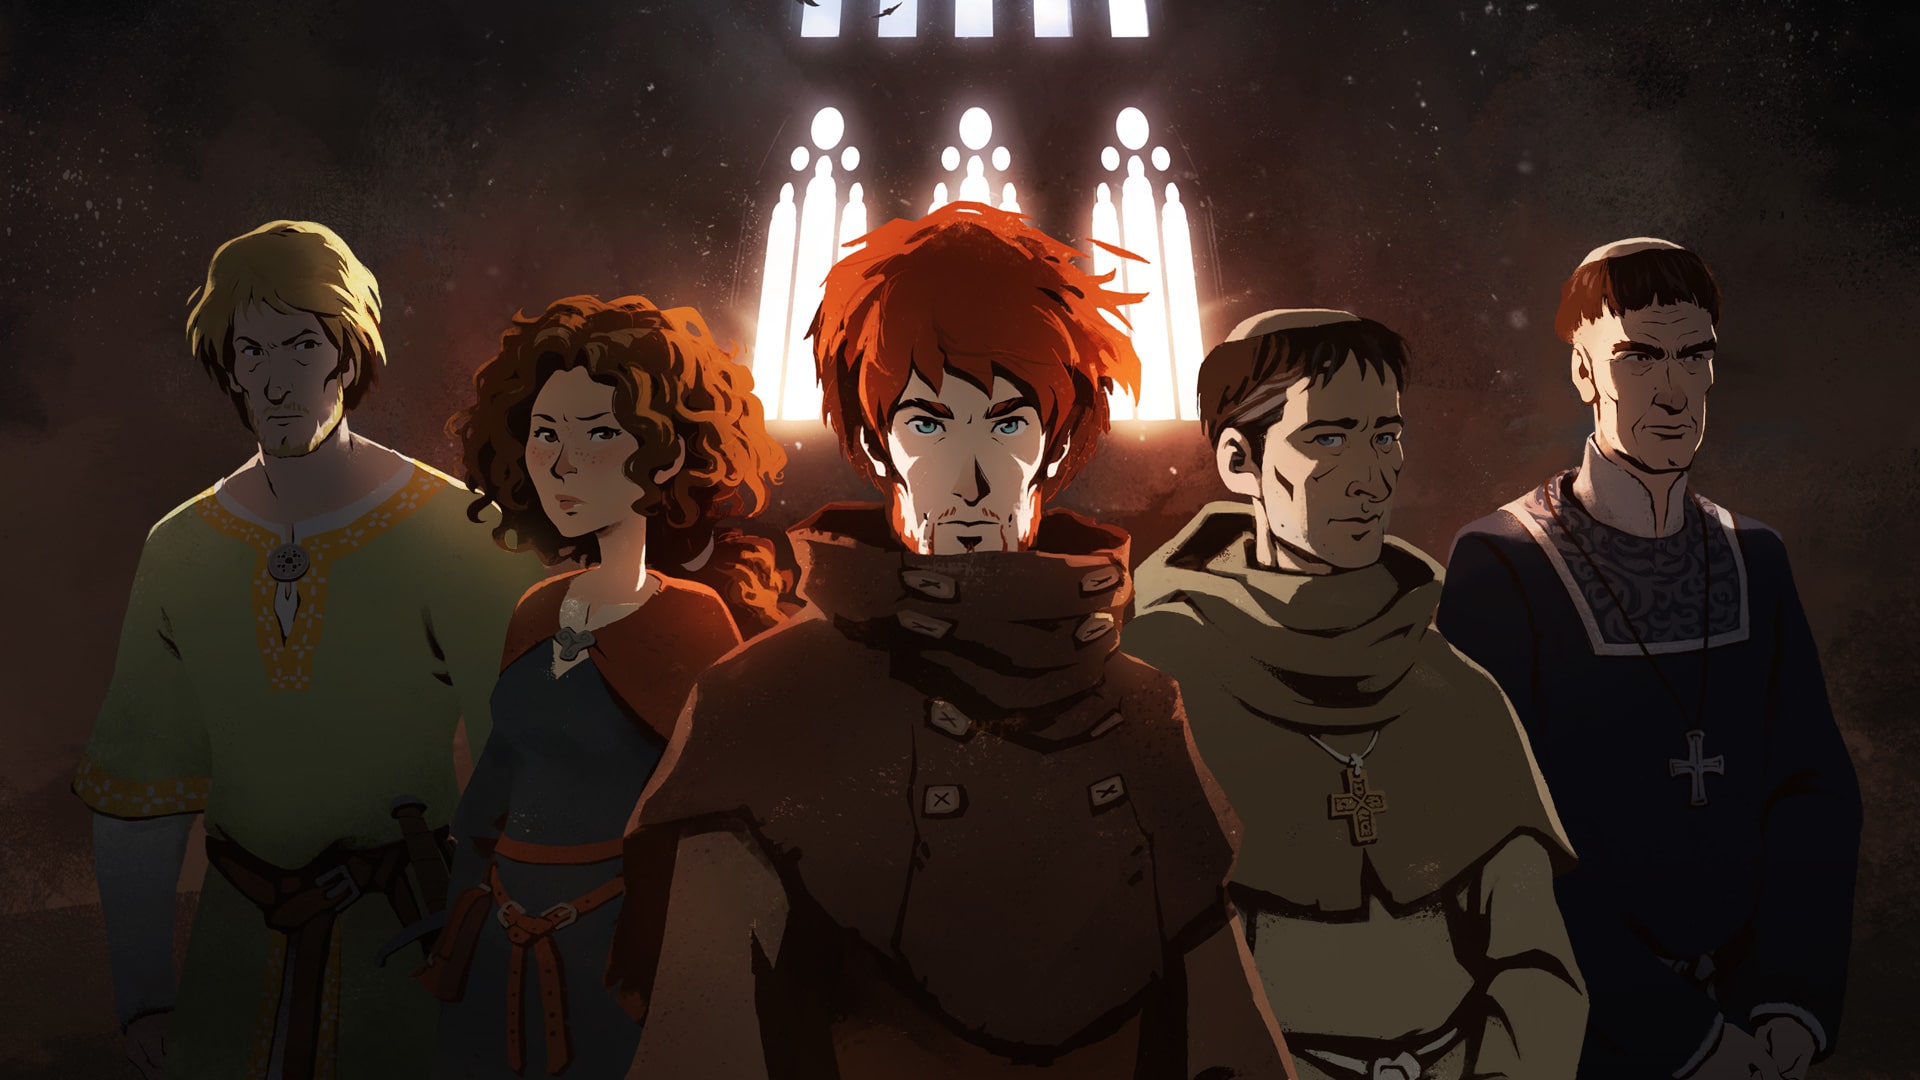 Immagine raffigurante i personaggi principali dell'adattamento di "I pilastri della terra"